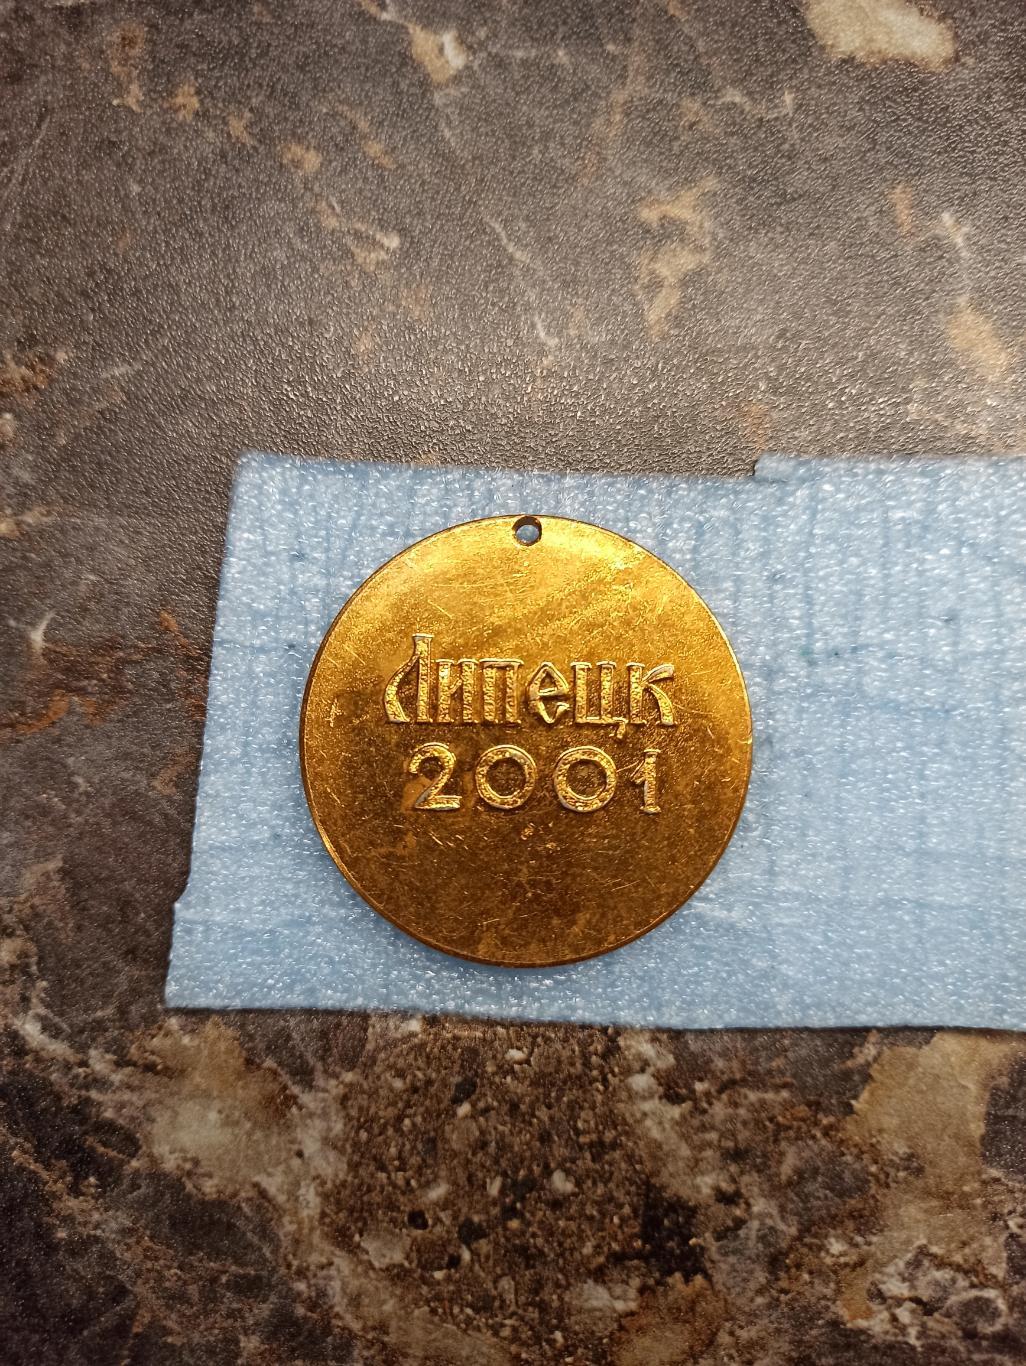 Чемпион по плаванию на открытой воде, Липецк, 2001, легкий металл, редкая медаль 1